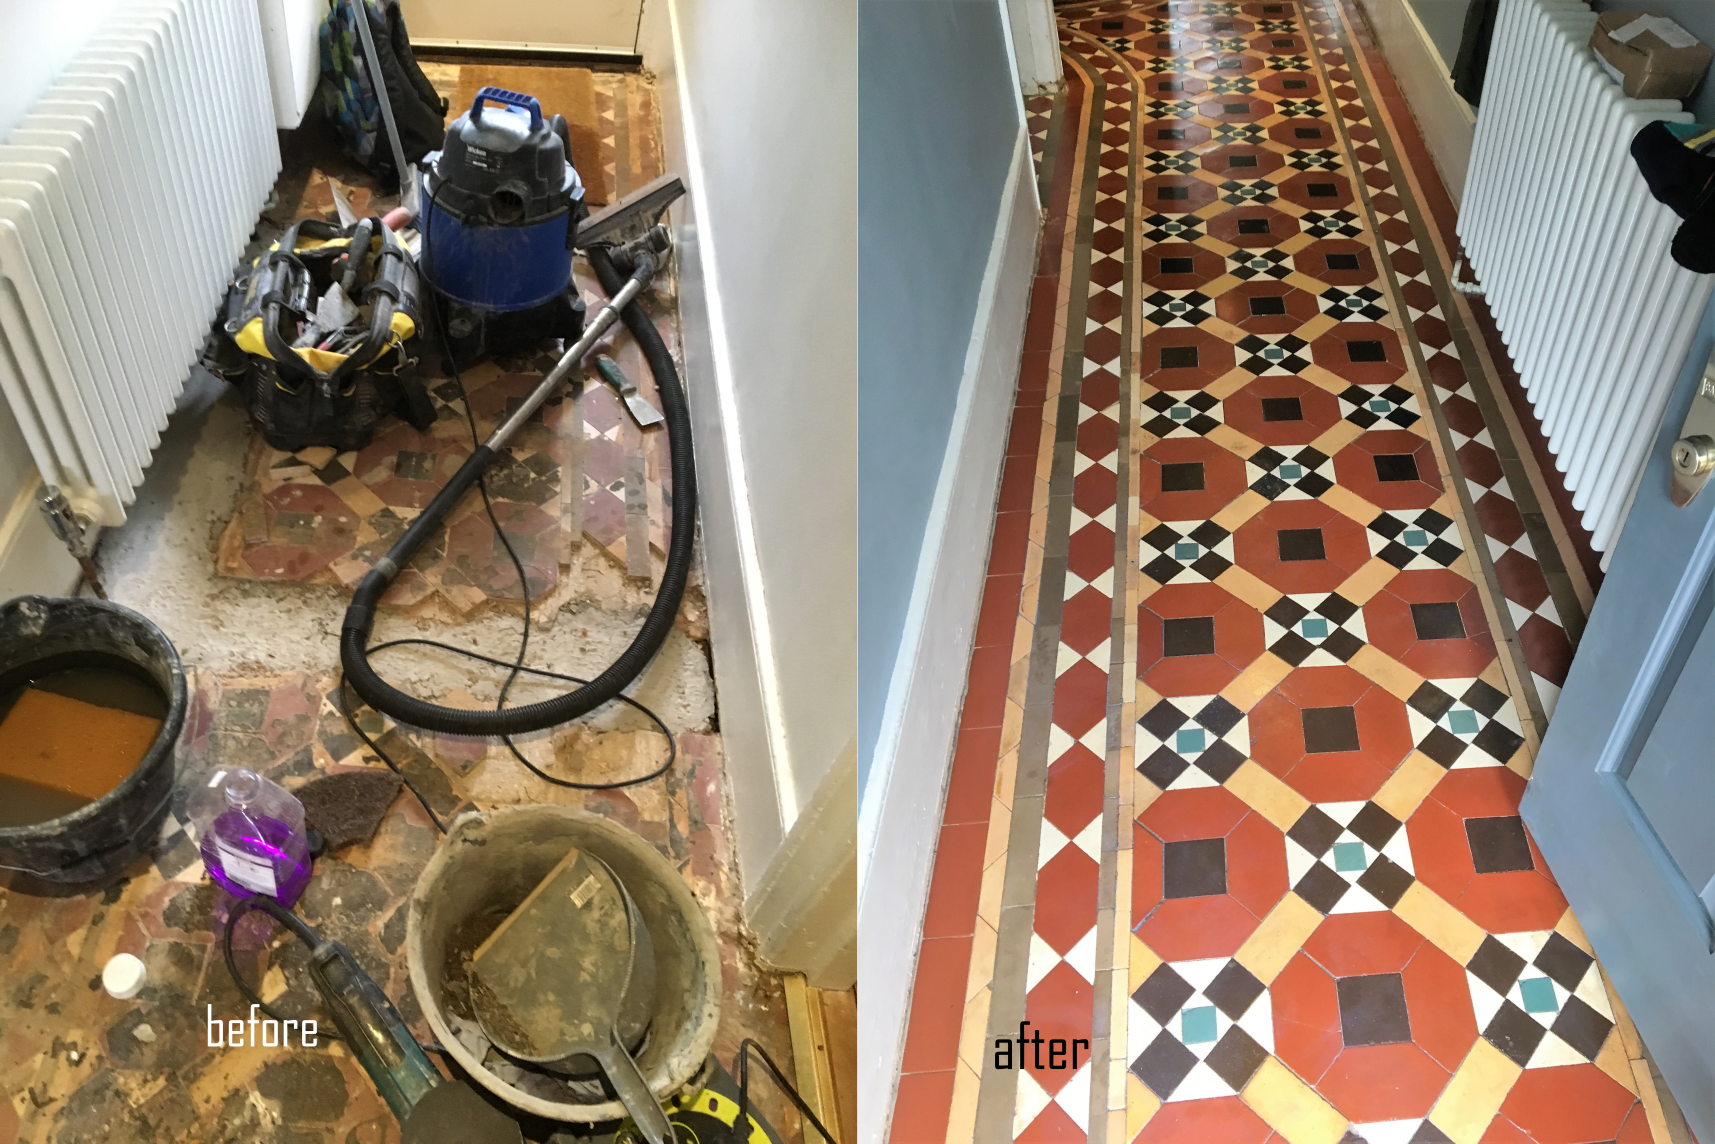 original Victorian hallway tiles completely rebuilt